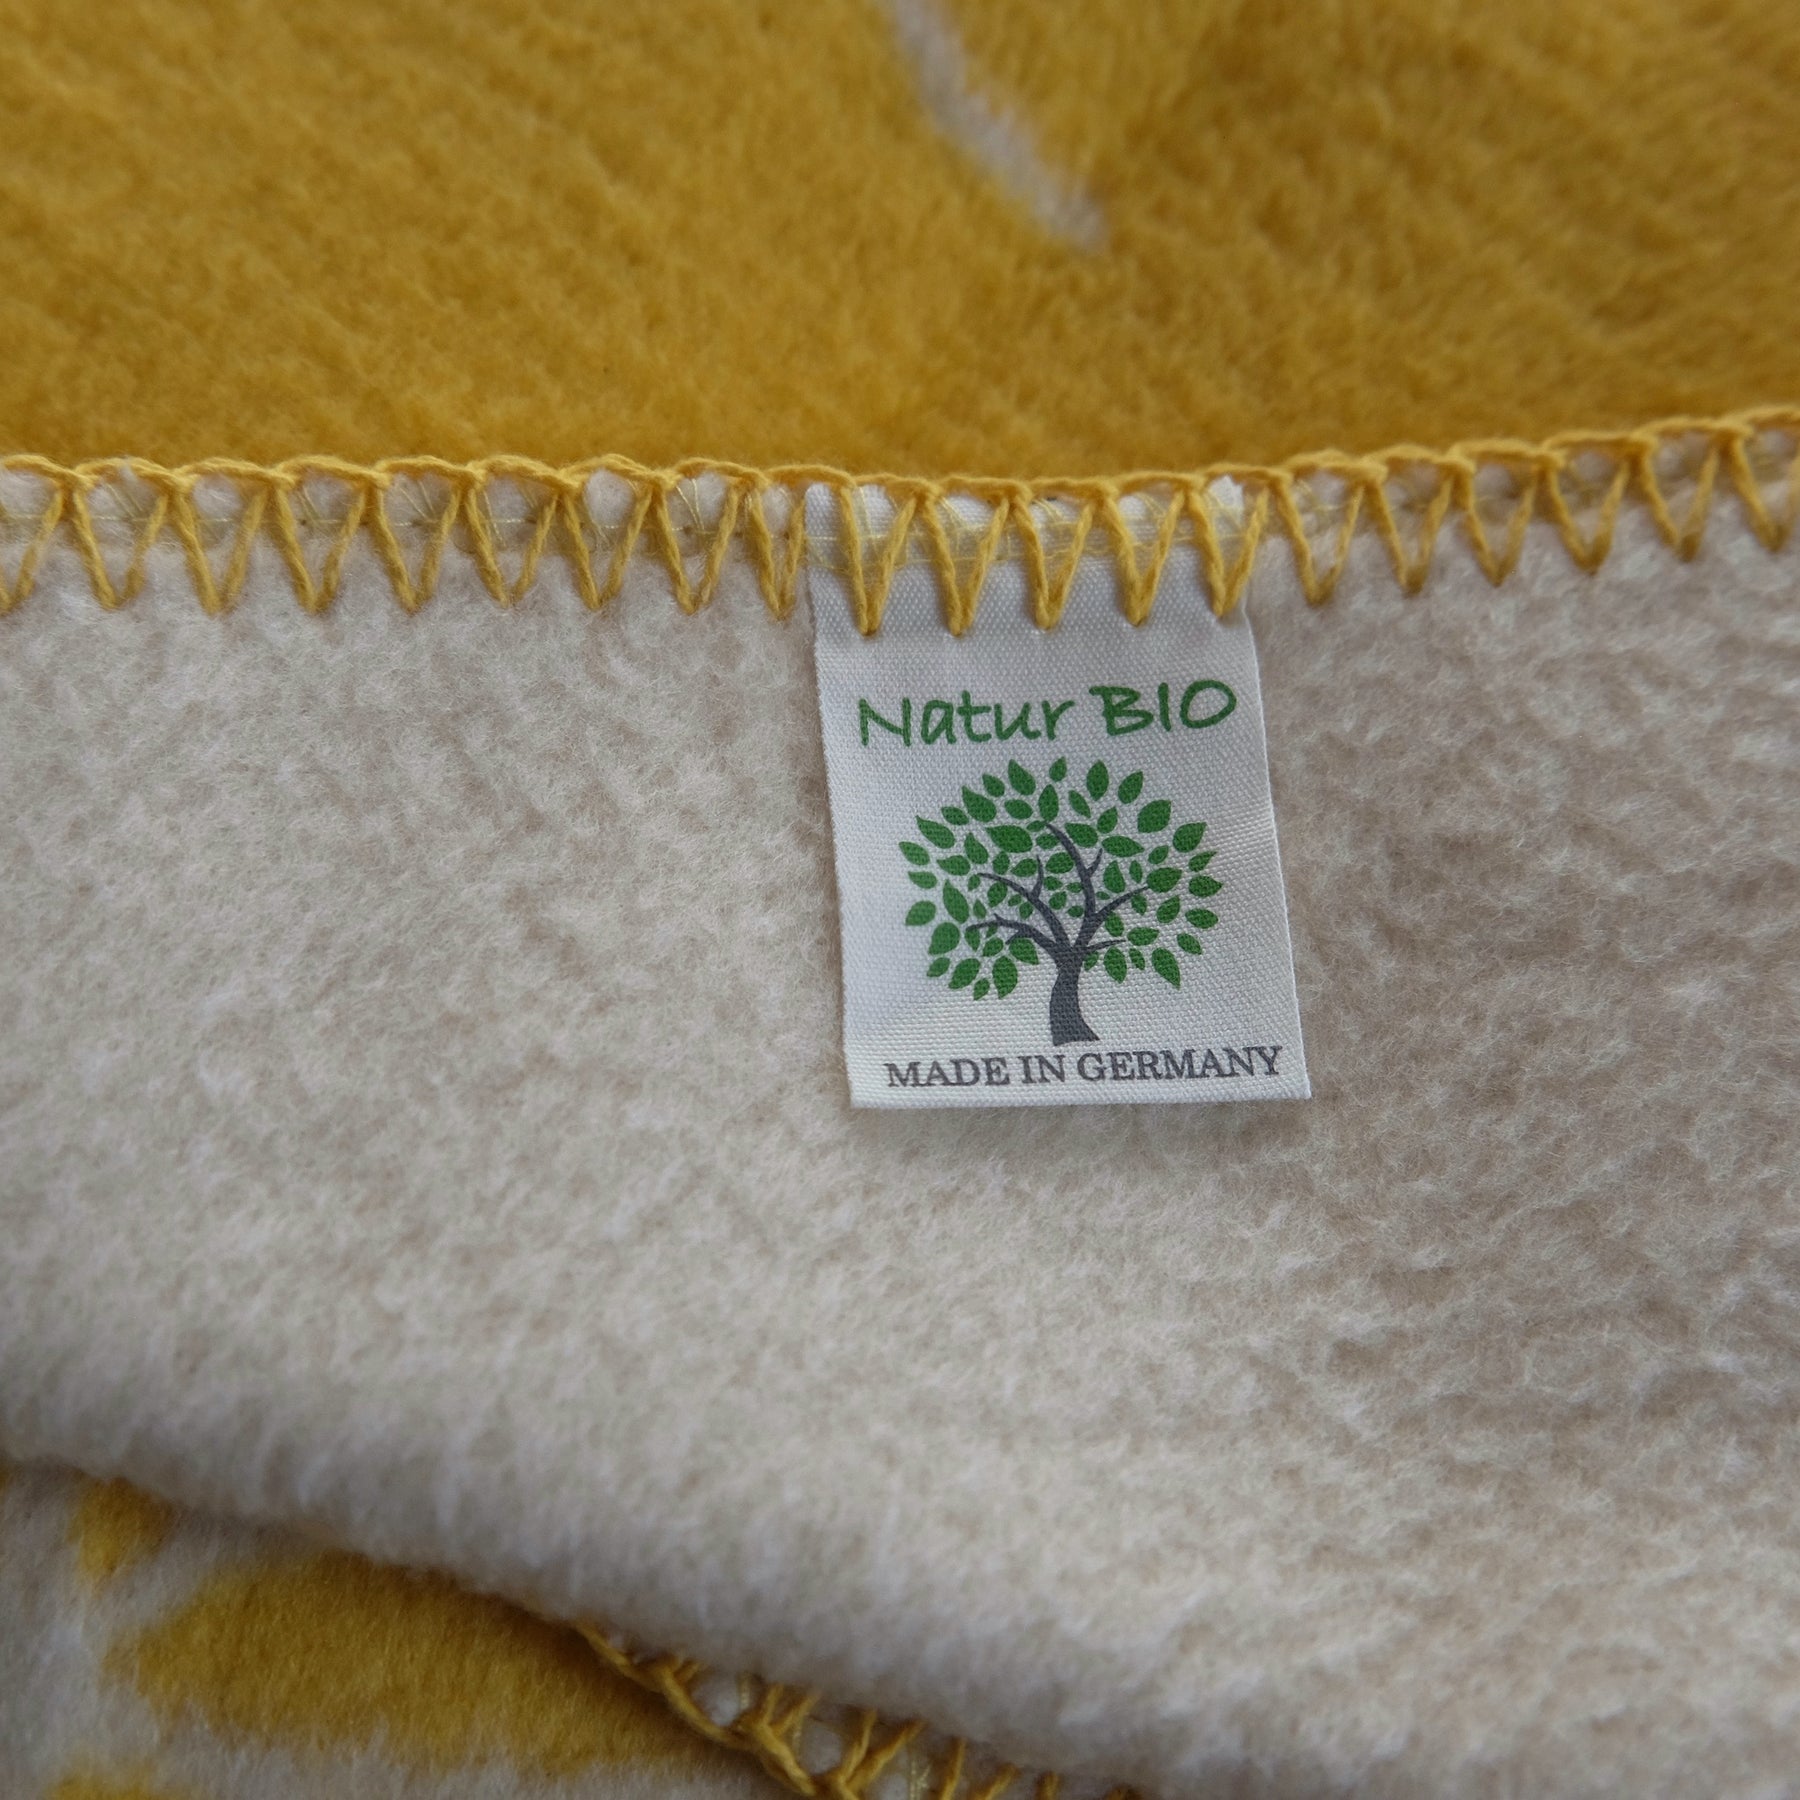 Babydecke gelb/natur, Biobaumwolldecke, Größe 75 x 100 cm, 100% Biobaumwolle, gots-zertifiziert